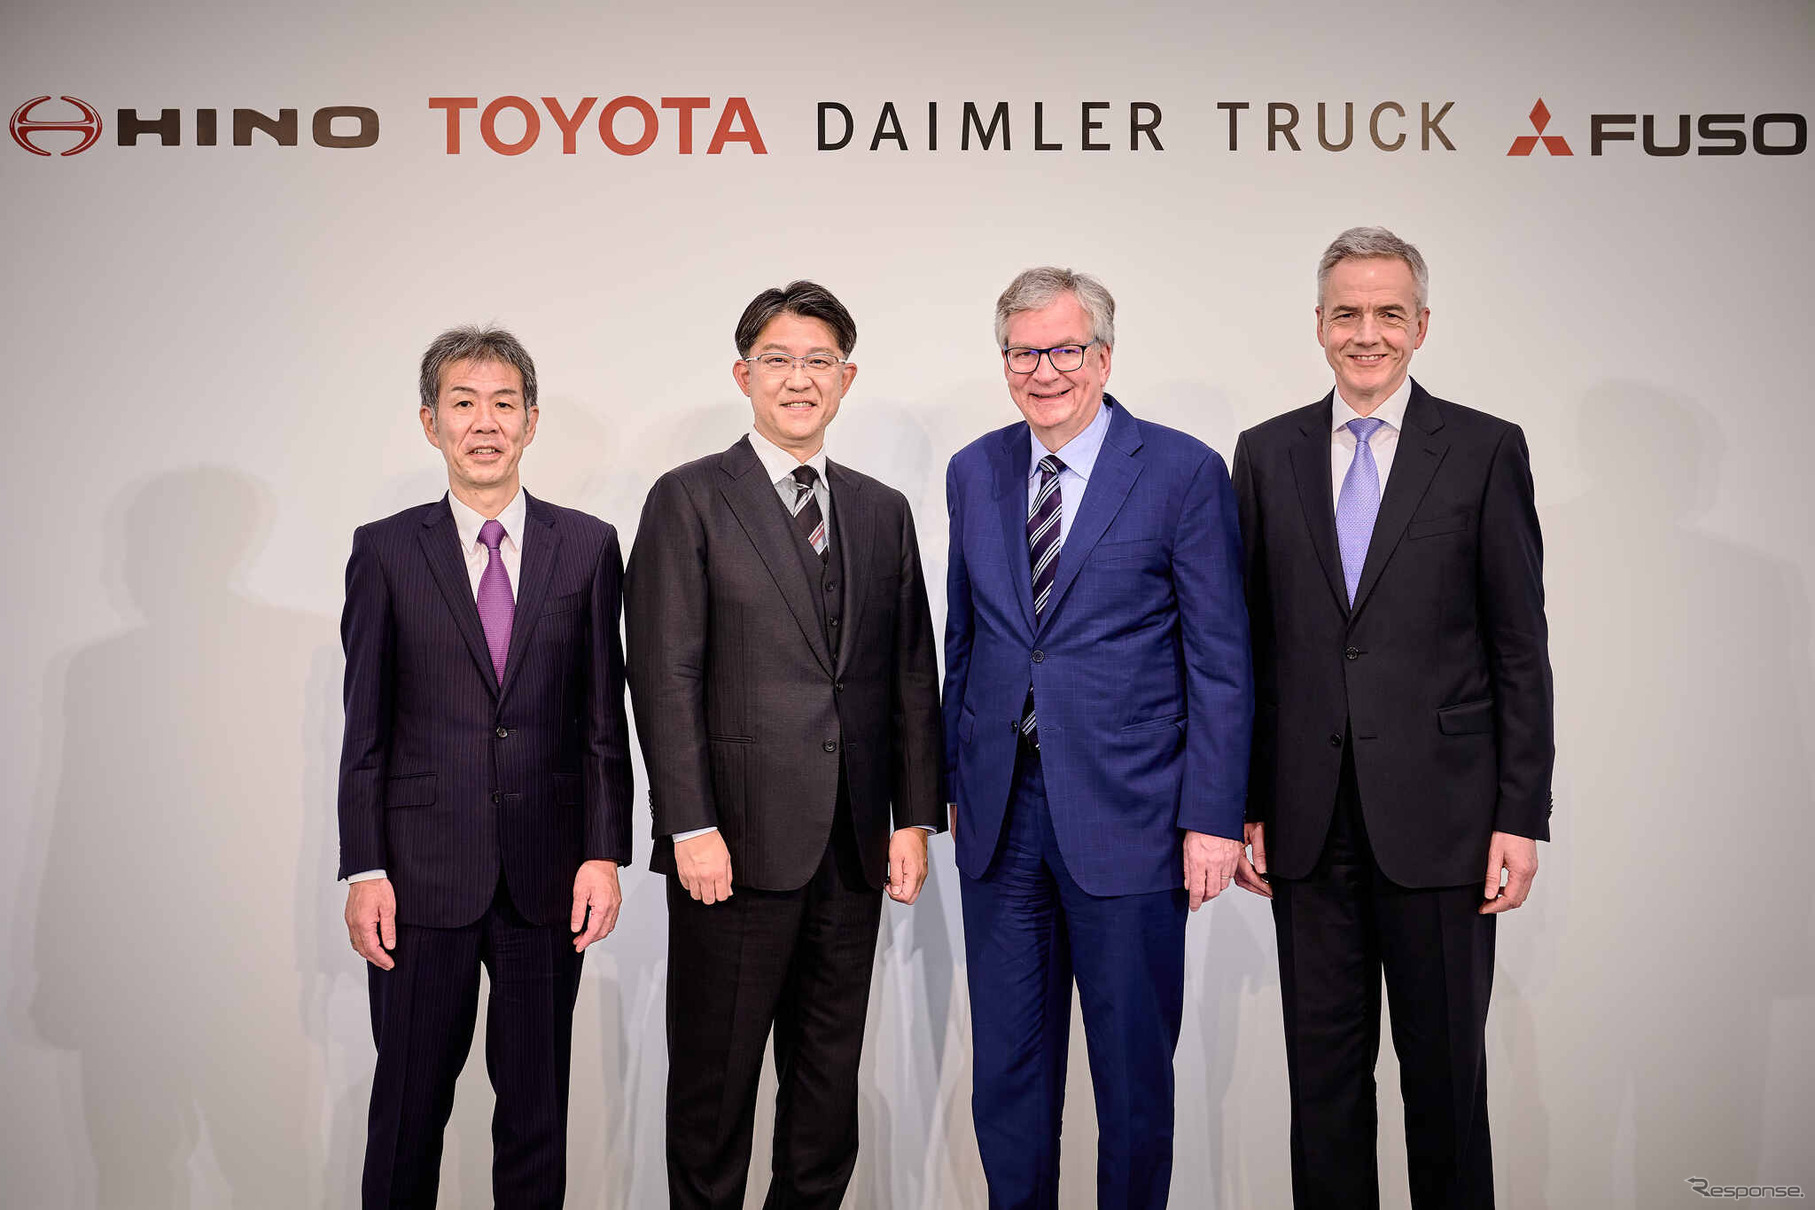 左から日野自動車の小木曽聡社長、トヨタ自動車の佐藤恒治社長、ダイムラートラックのマーティン・ダウムCEO、三菱ふそうトラック・バスのカール・デッペンCEO